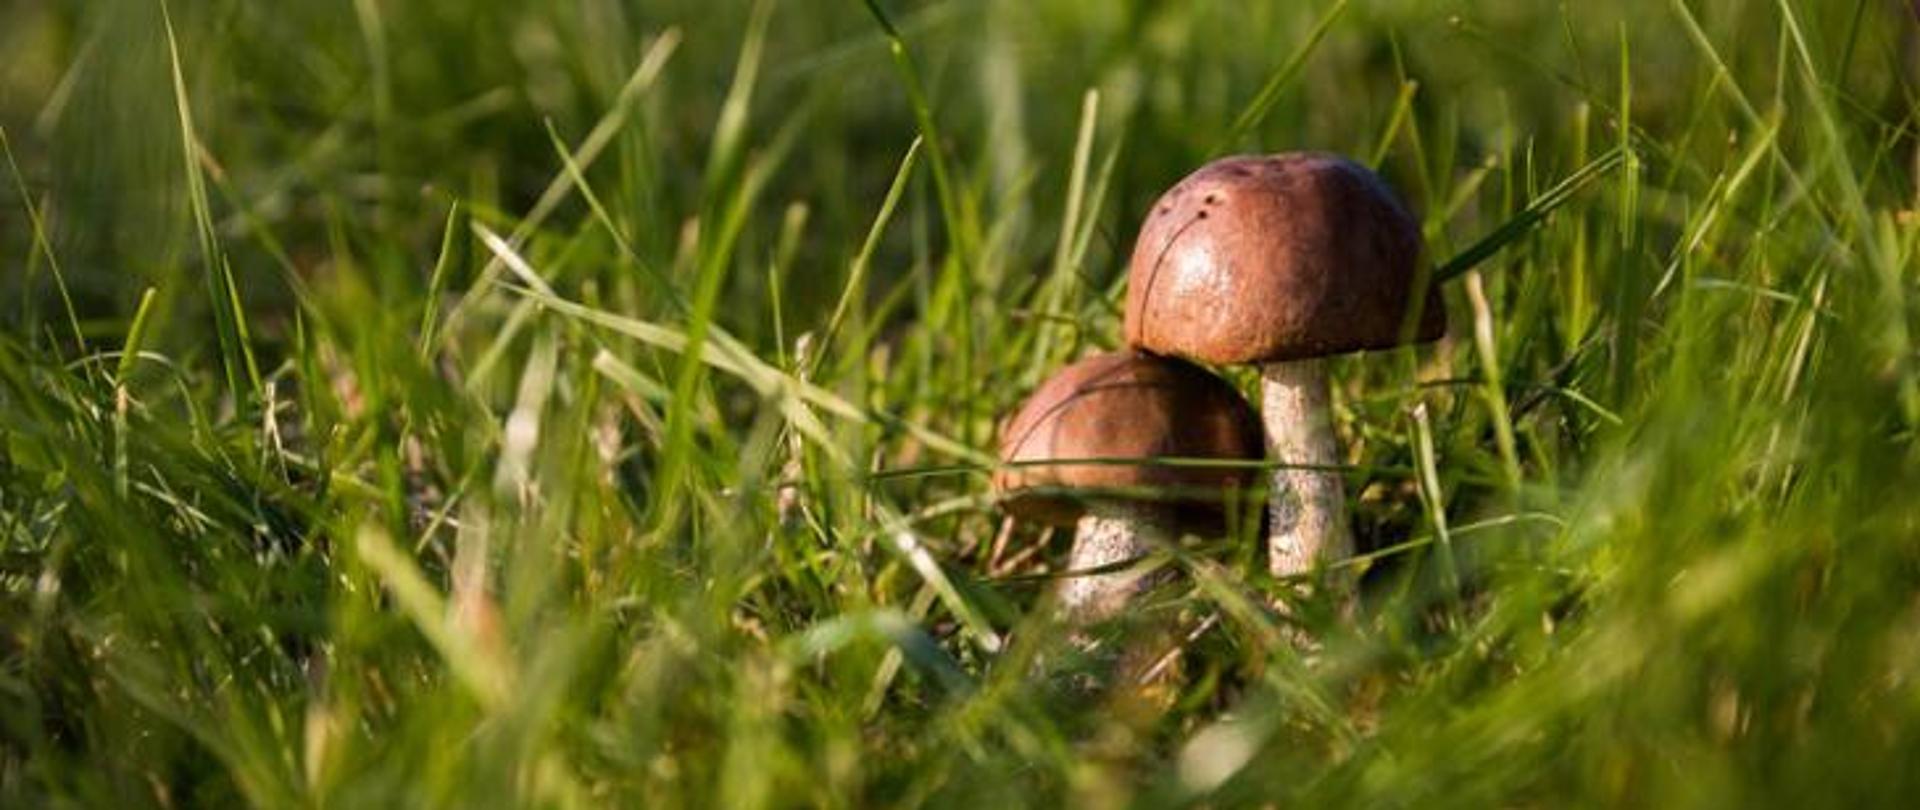 na zdjęciu widoczna trawa z grzybami